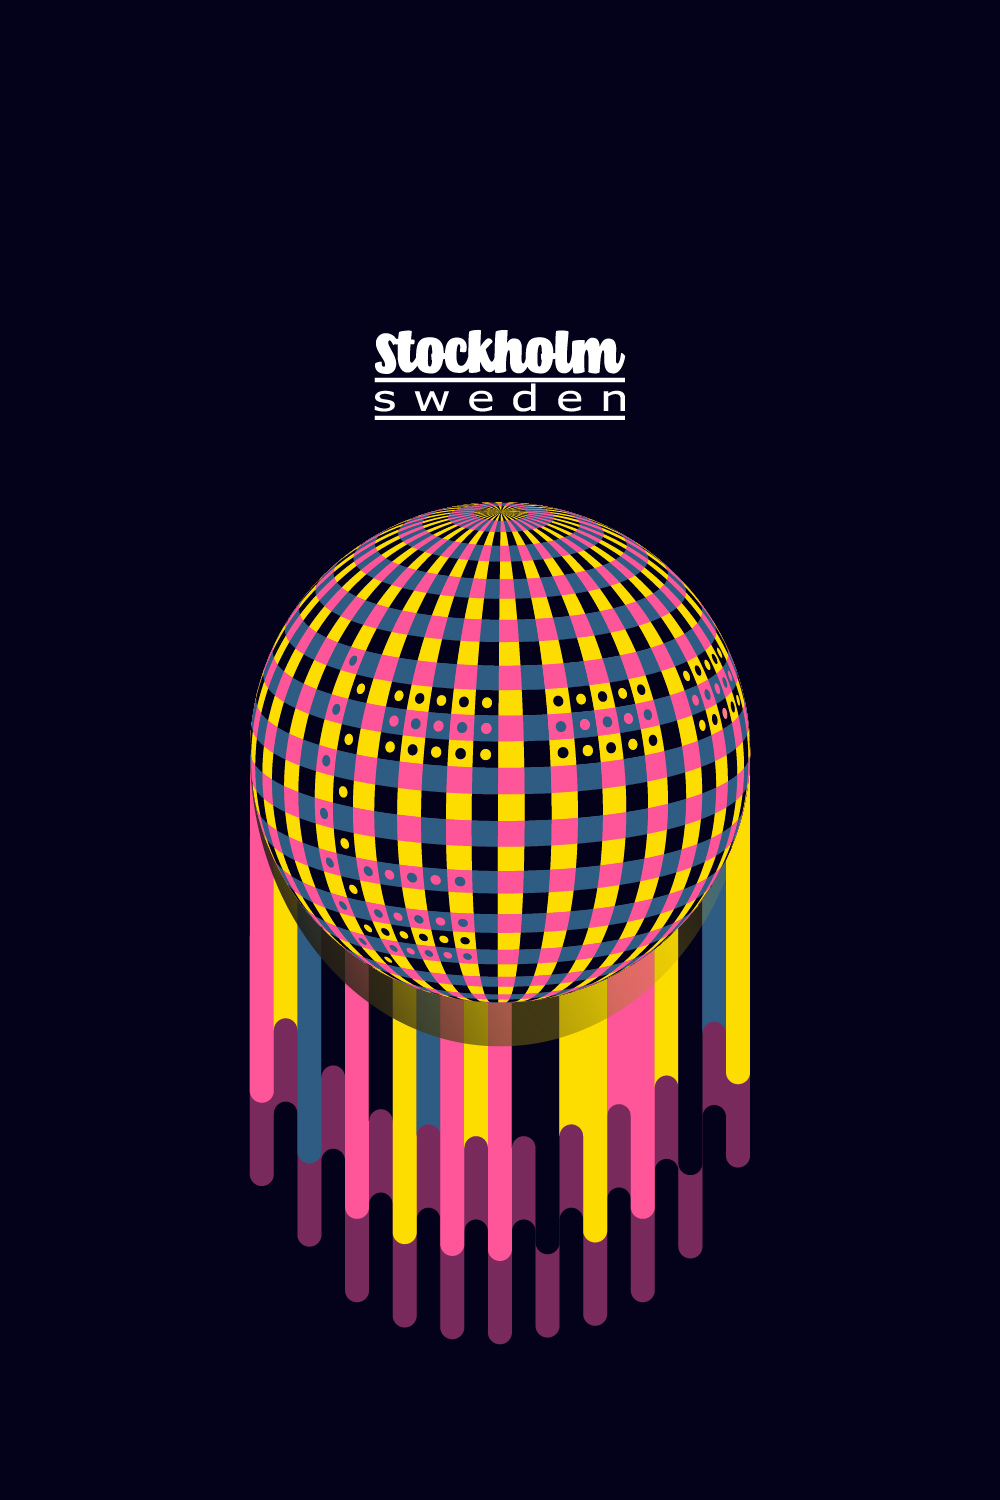 Stockholm sweden2 01